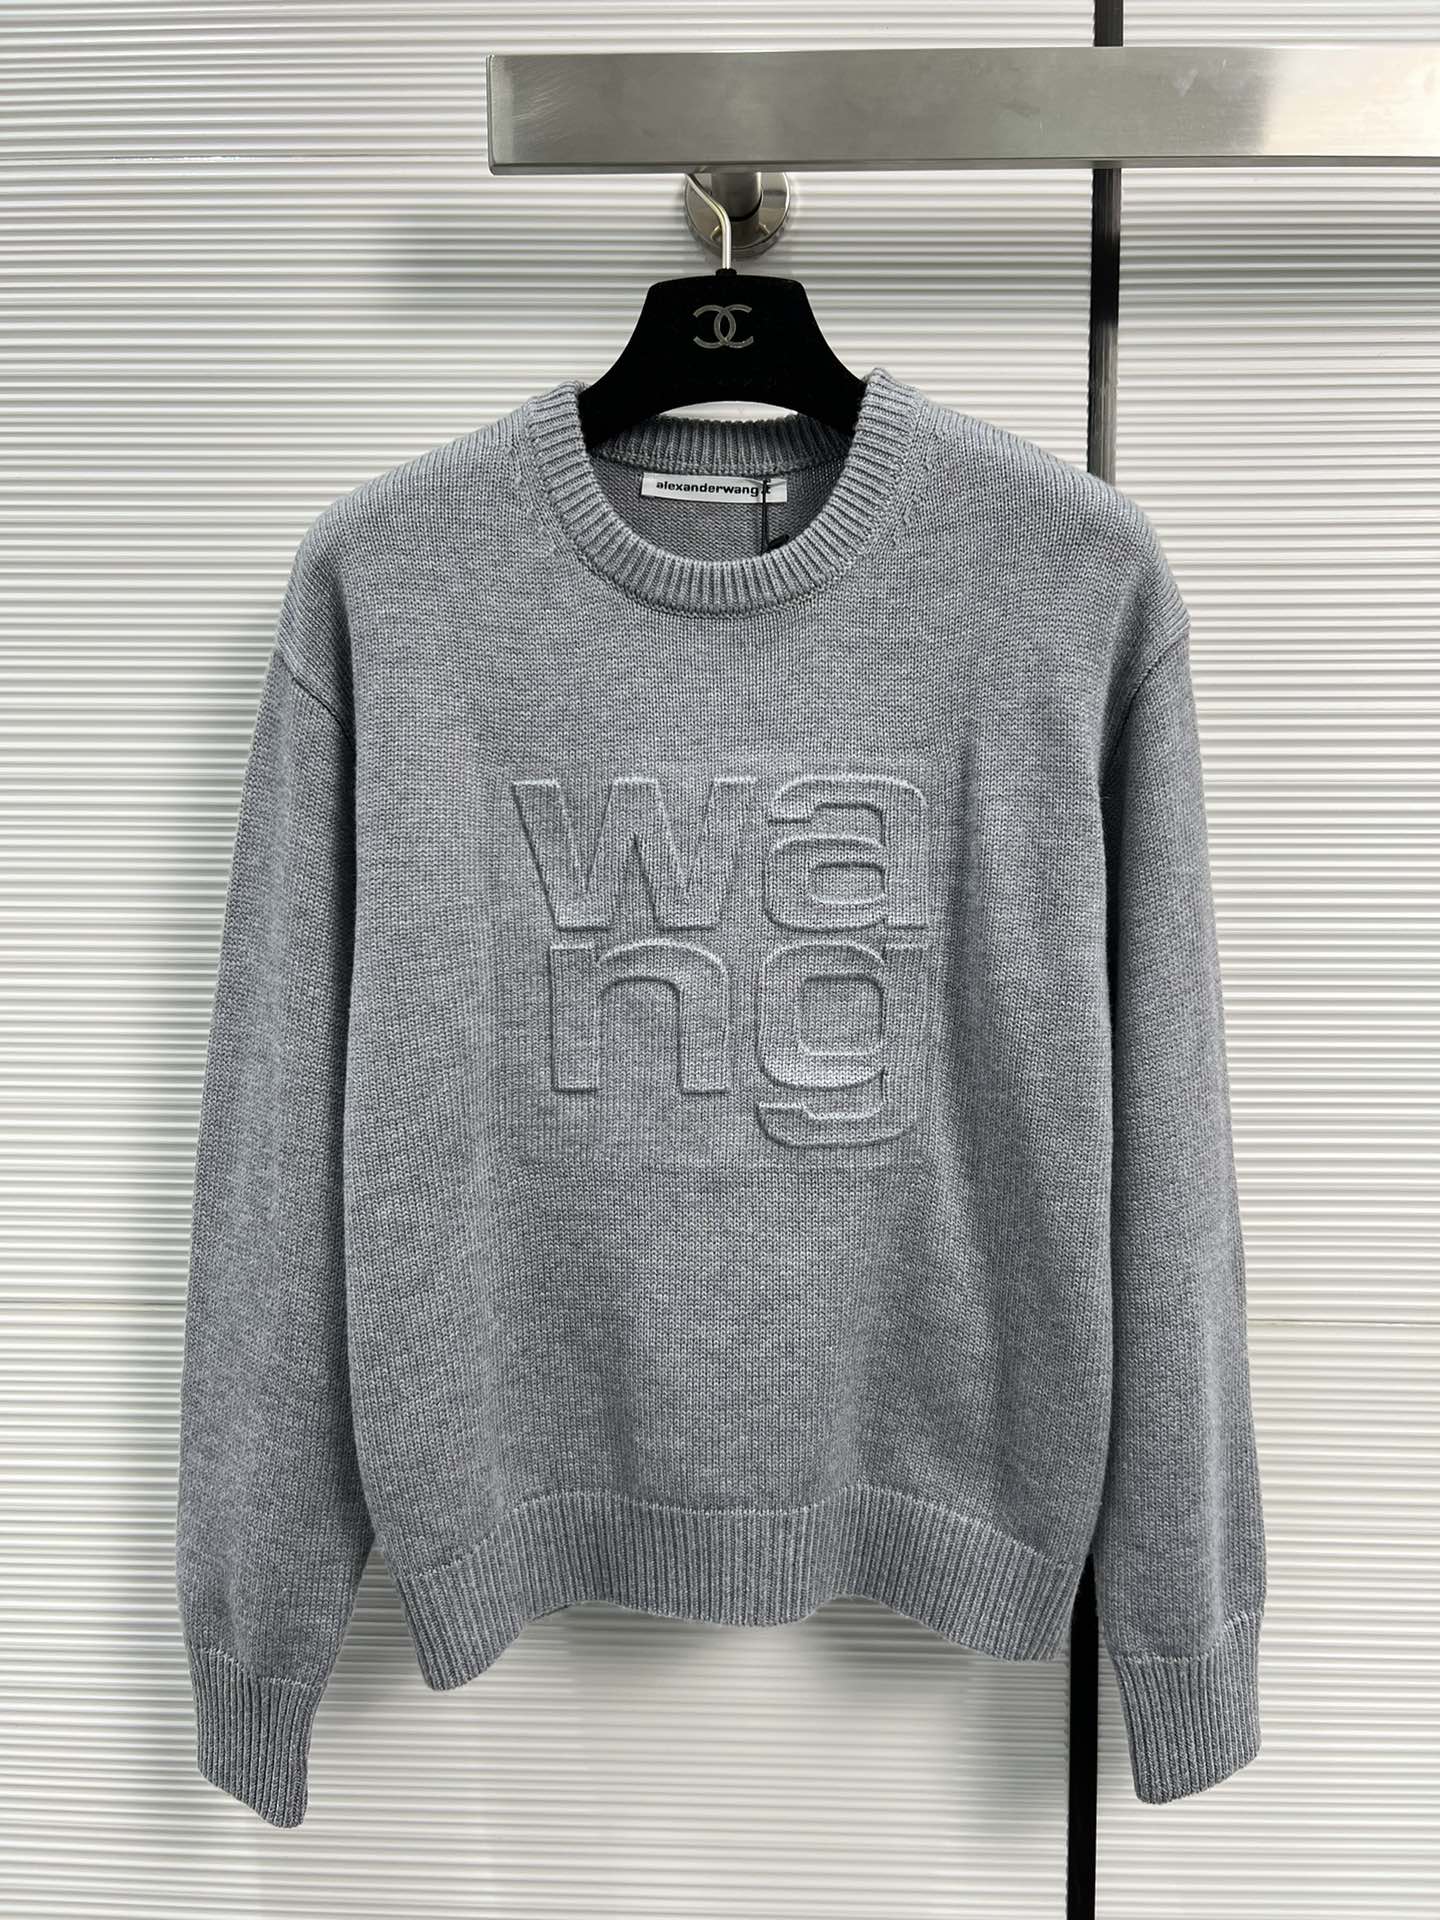 アレキサンダーワング セーター コピー シンプル ロゴ ウールセーター 